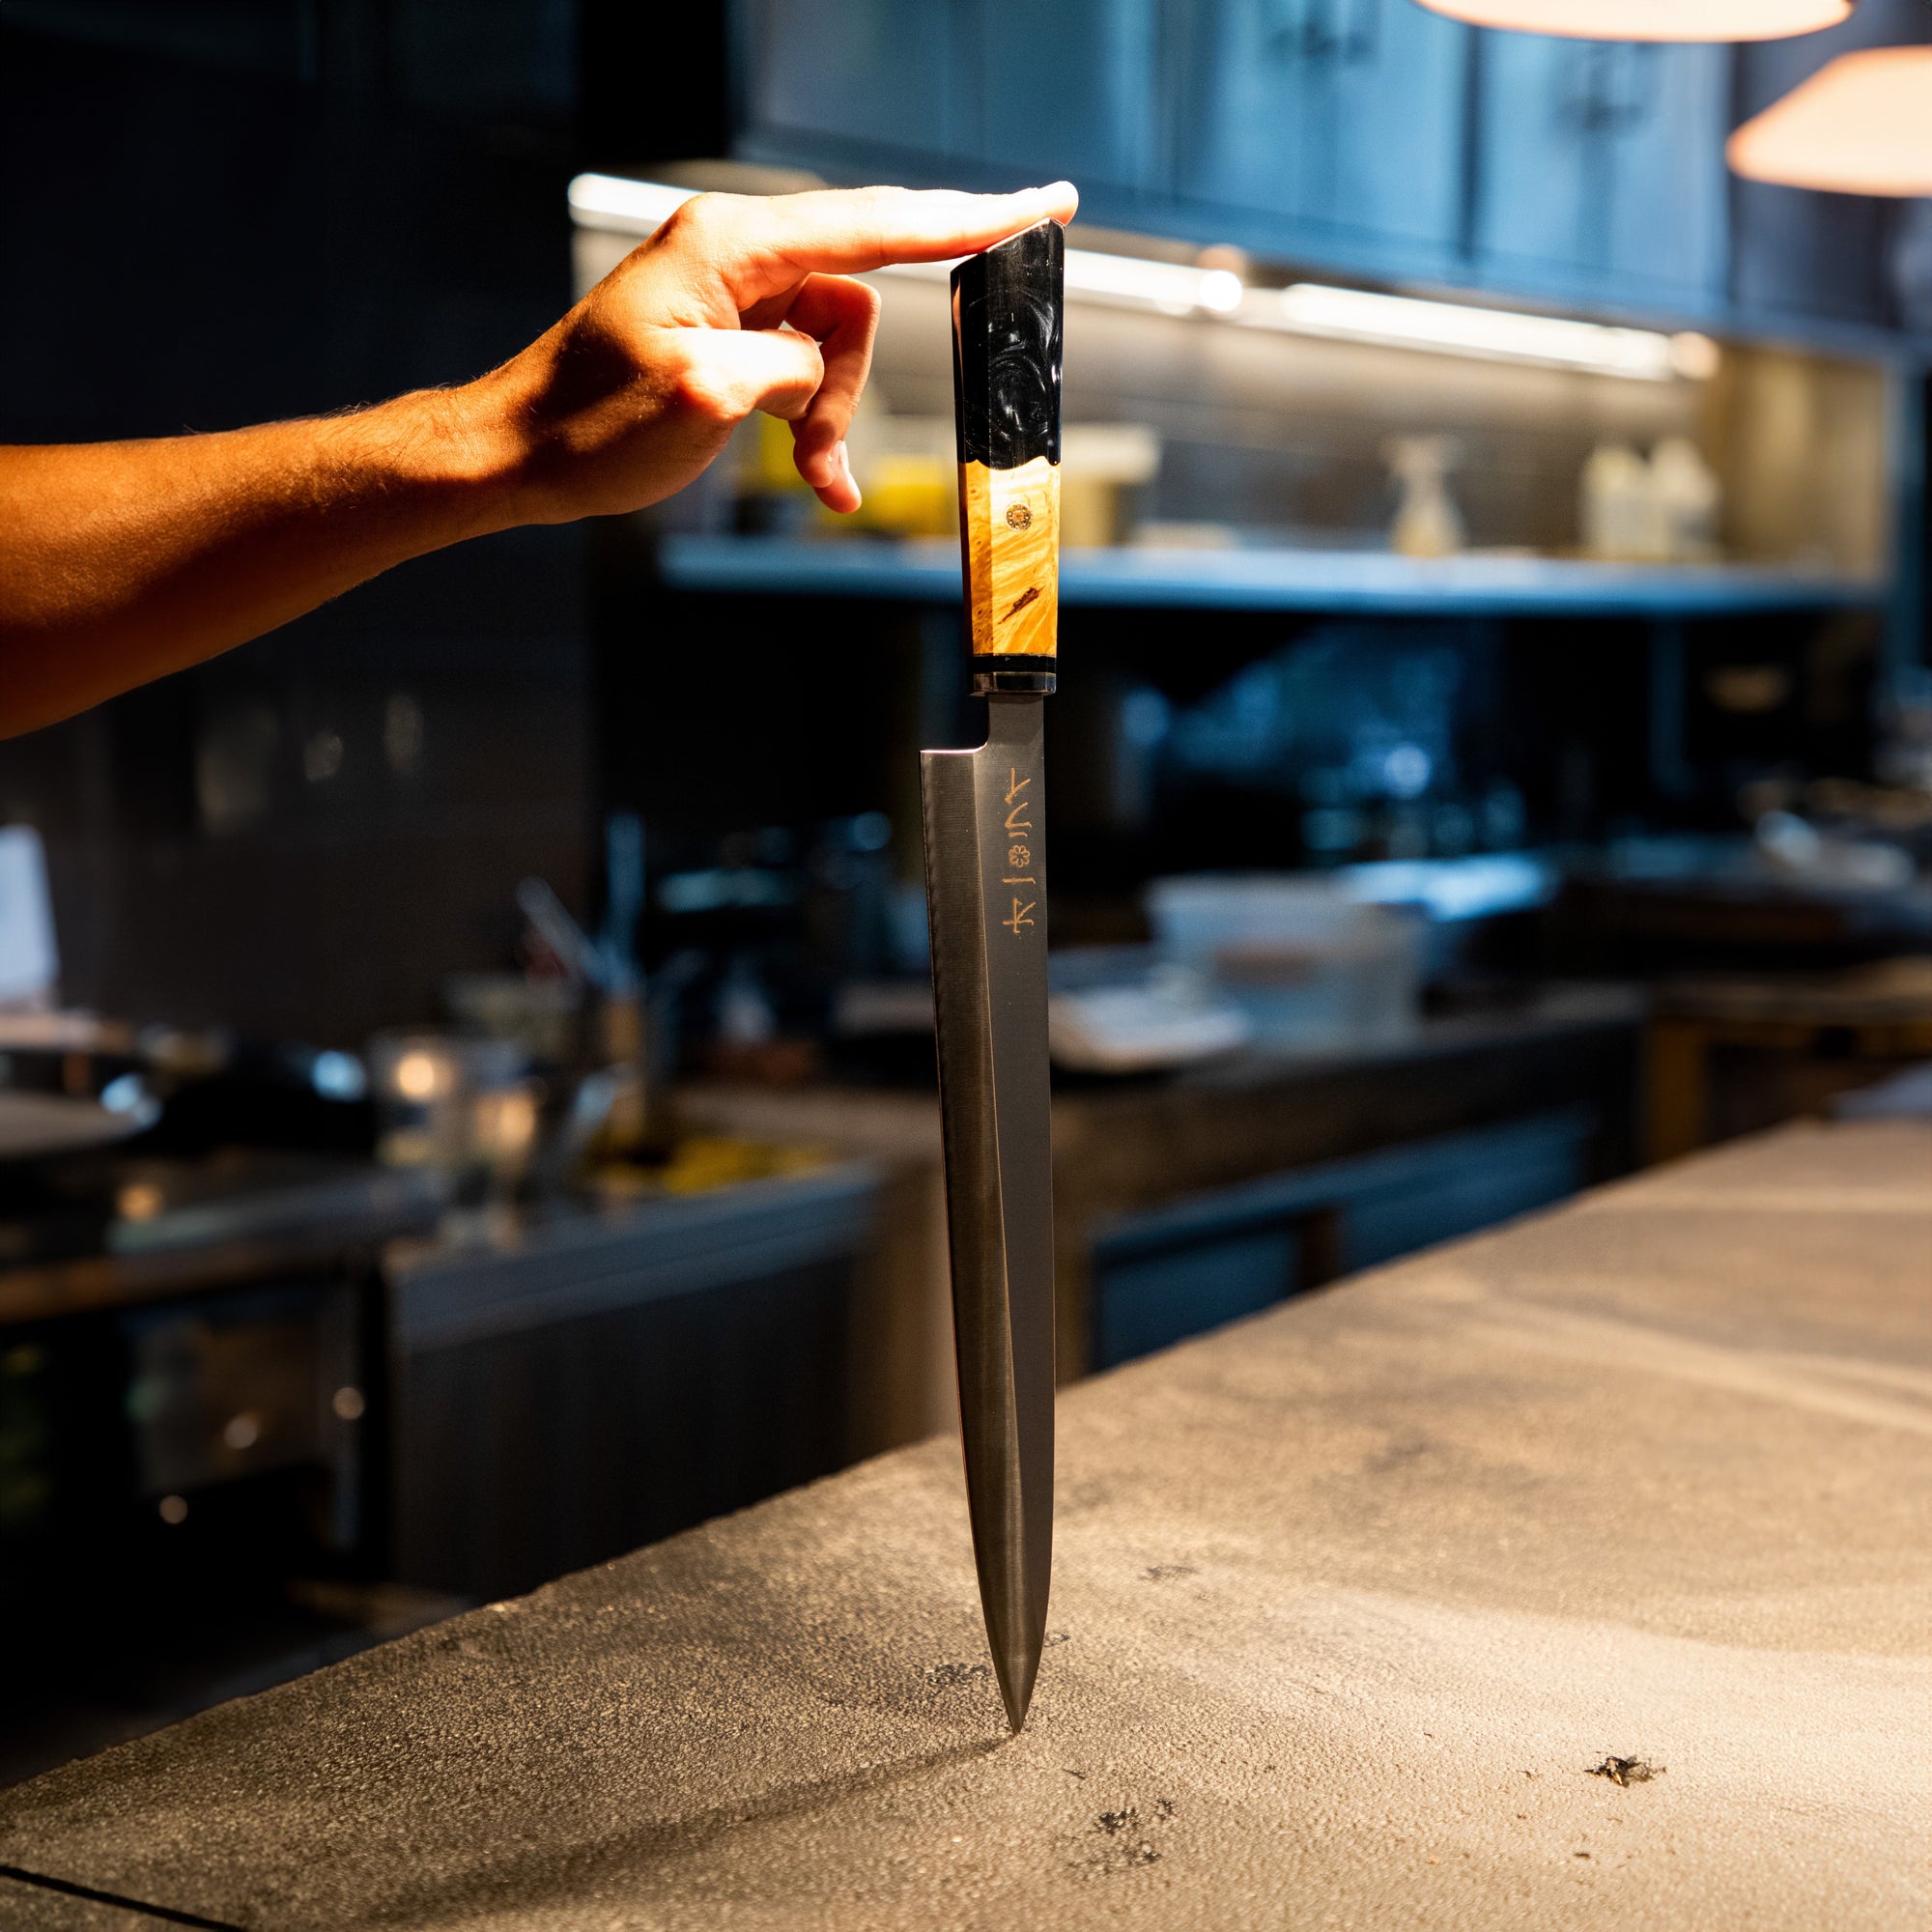 Cuchillo Yanagiba - All Right Chef tool's 28cm